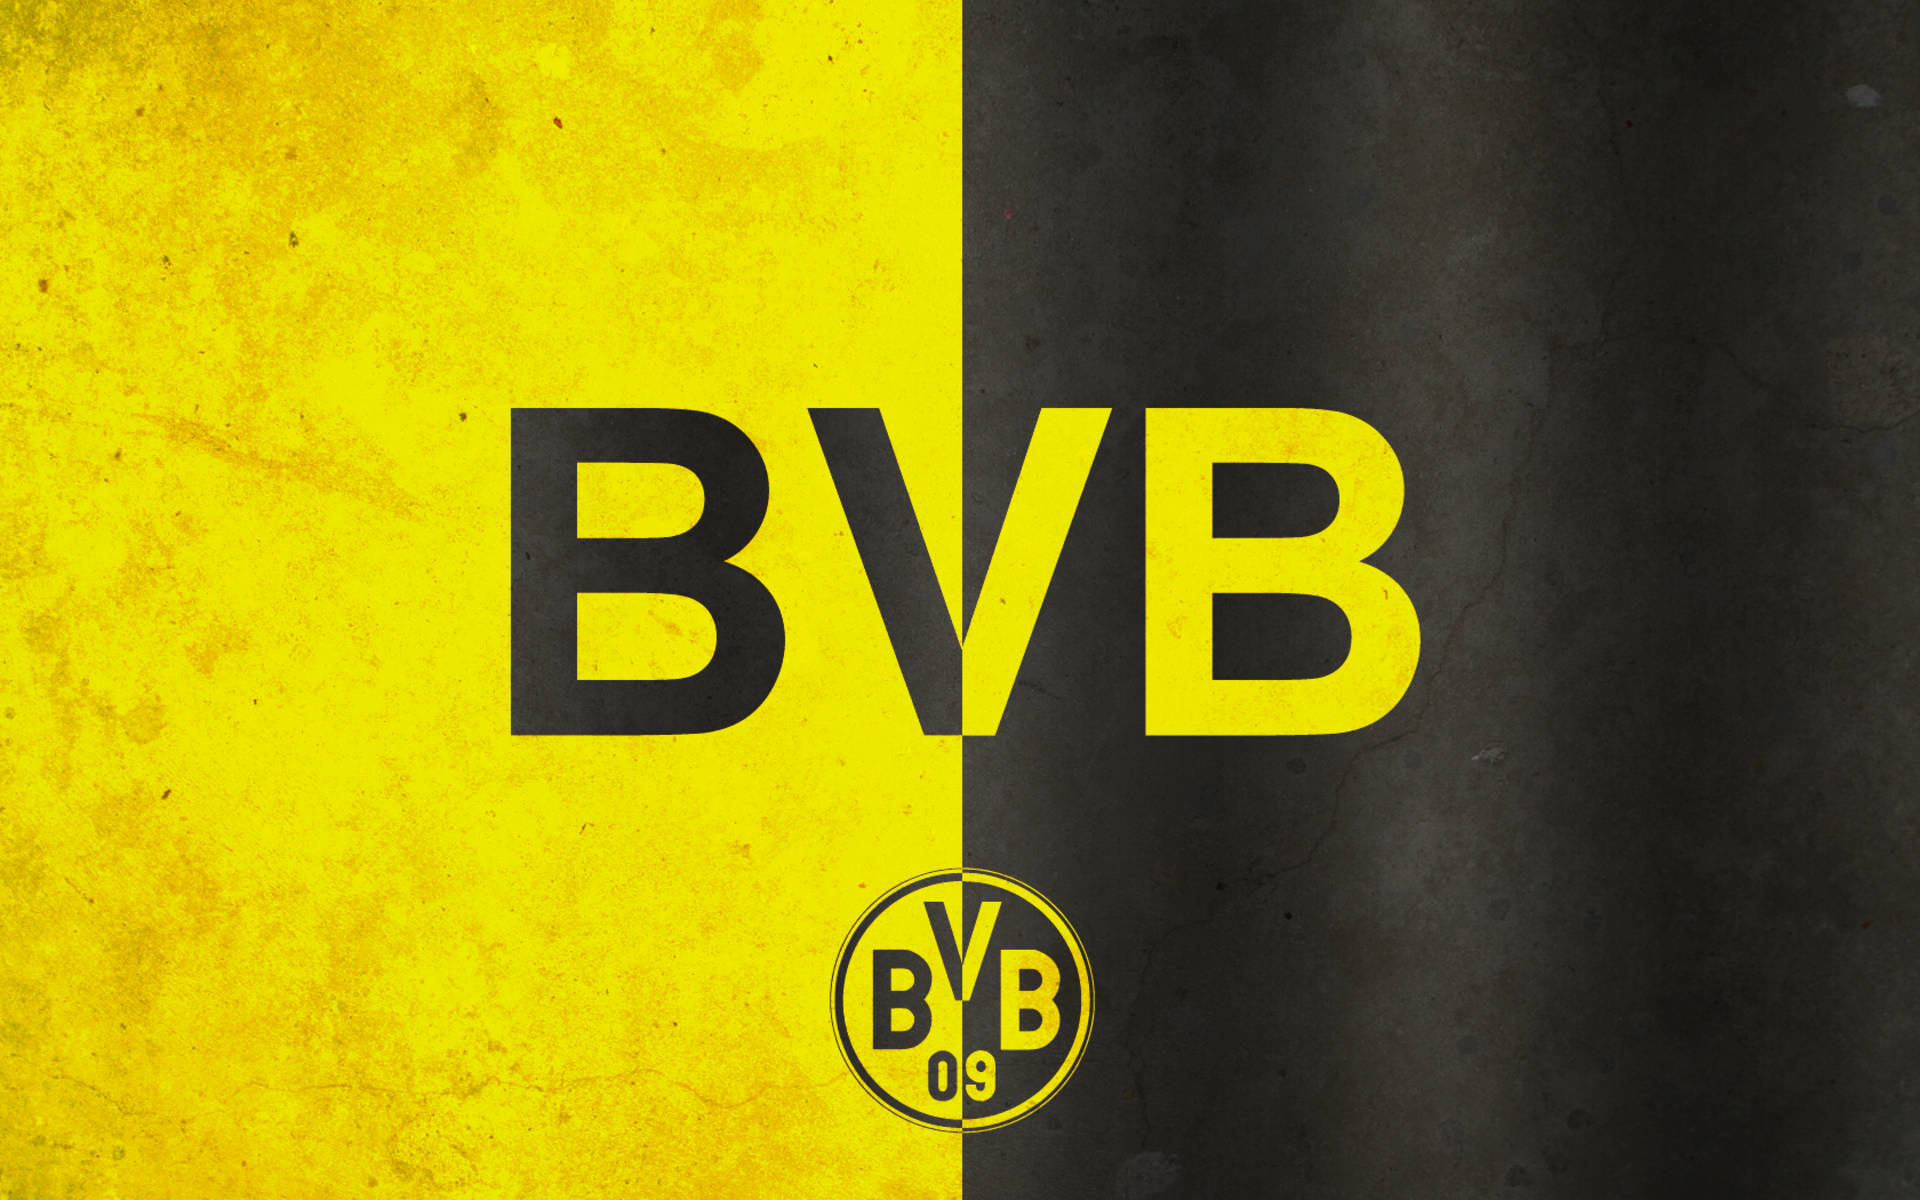 Dortmund Wallpaper